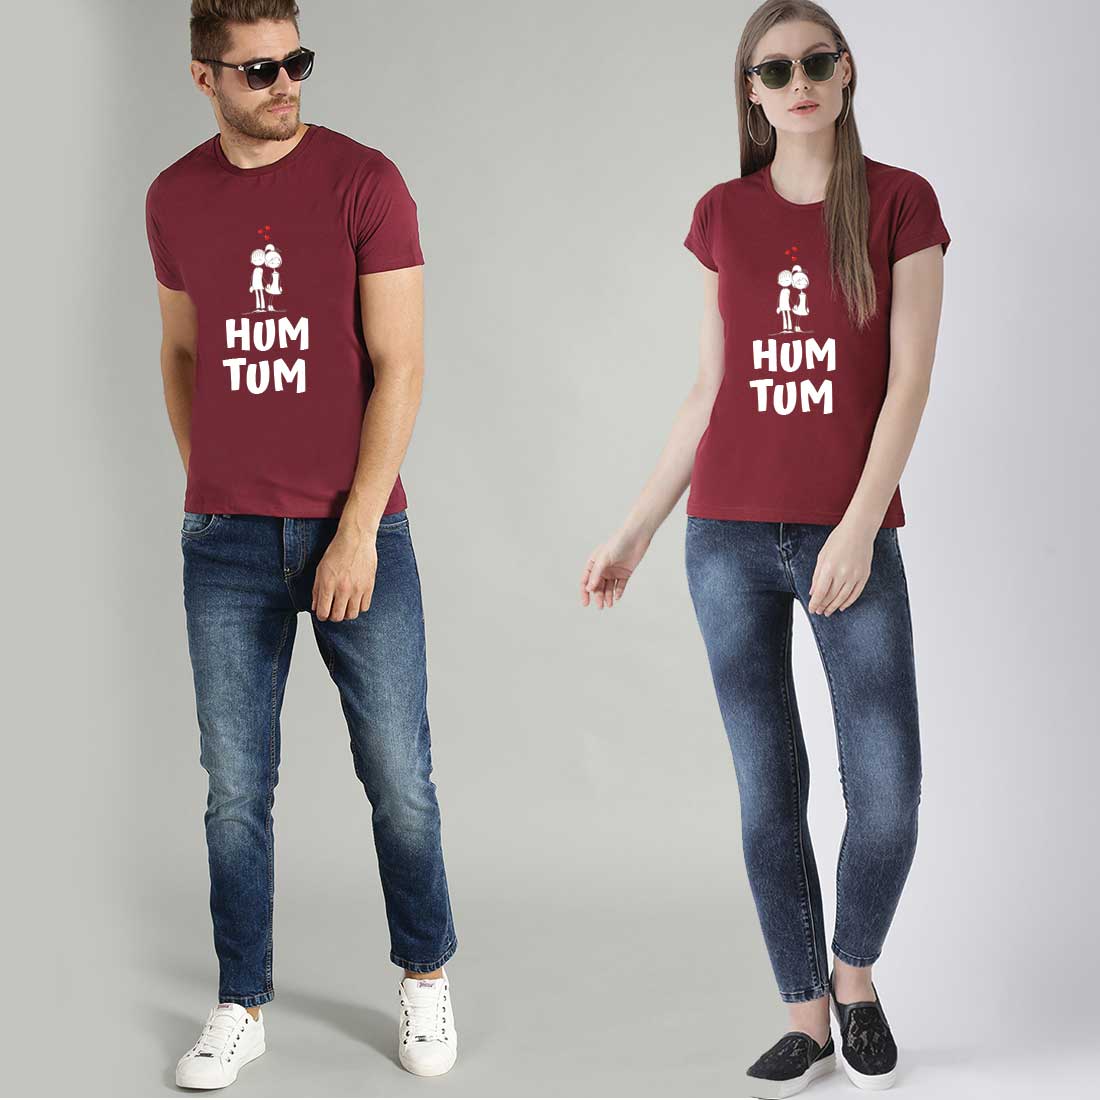 Romantic Couple T-shirts Online